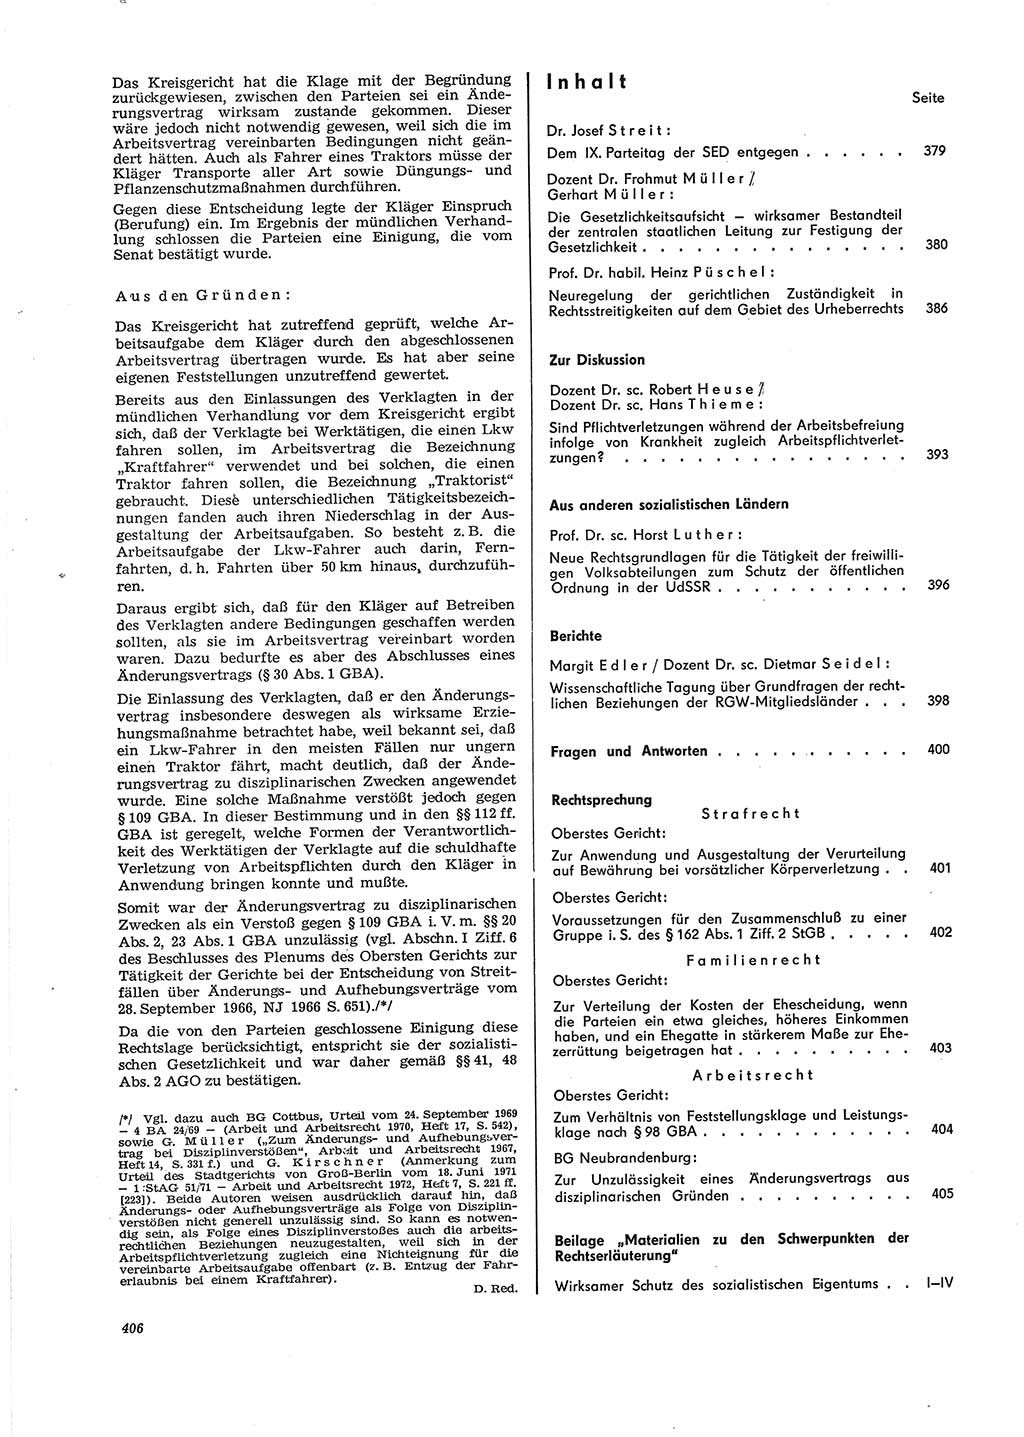 Neue Justiz (NJ), Zeitschrift für Recht und Rechtswissenschaft [Deutsche Demokratische Republik (DDR)], 29. Jahrgang 1975, Seite 406 (NJ DDR 1975, S. 406)